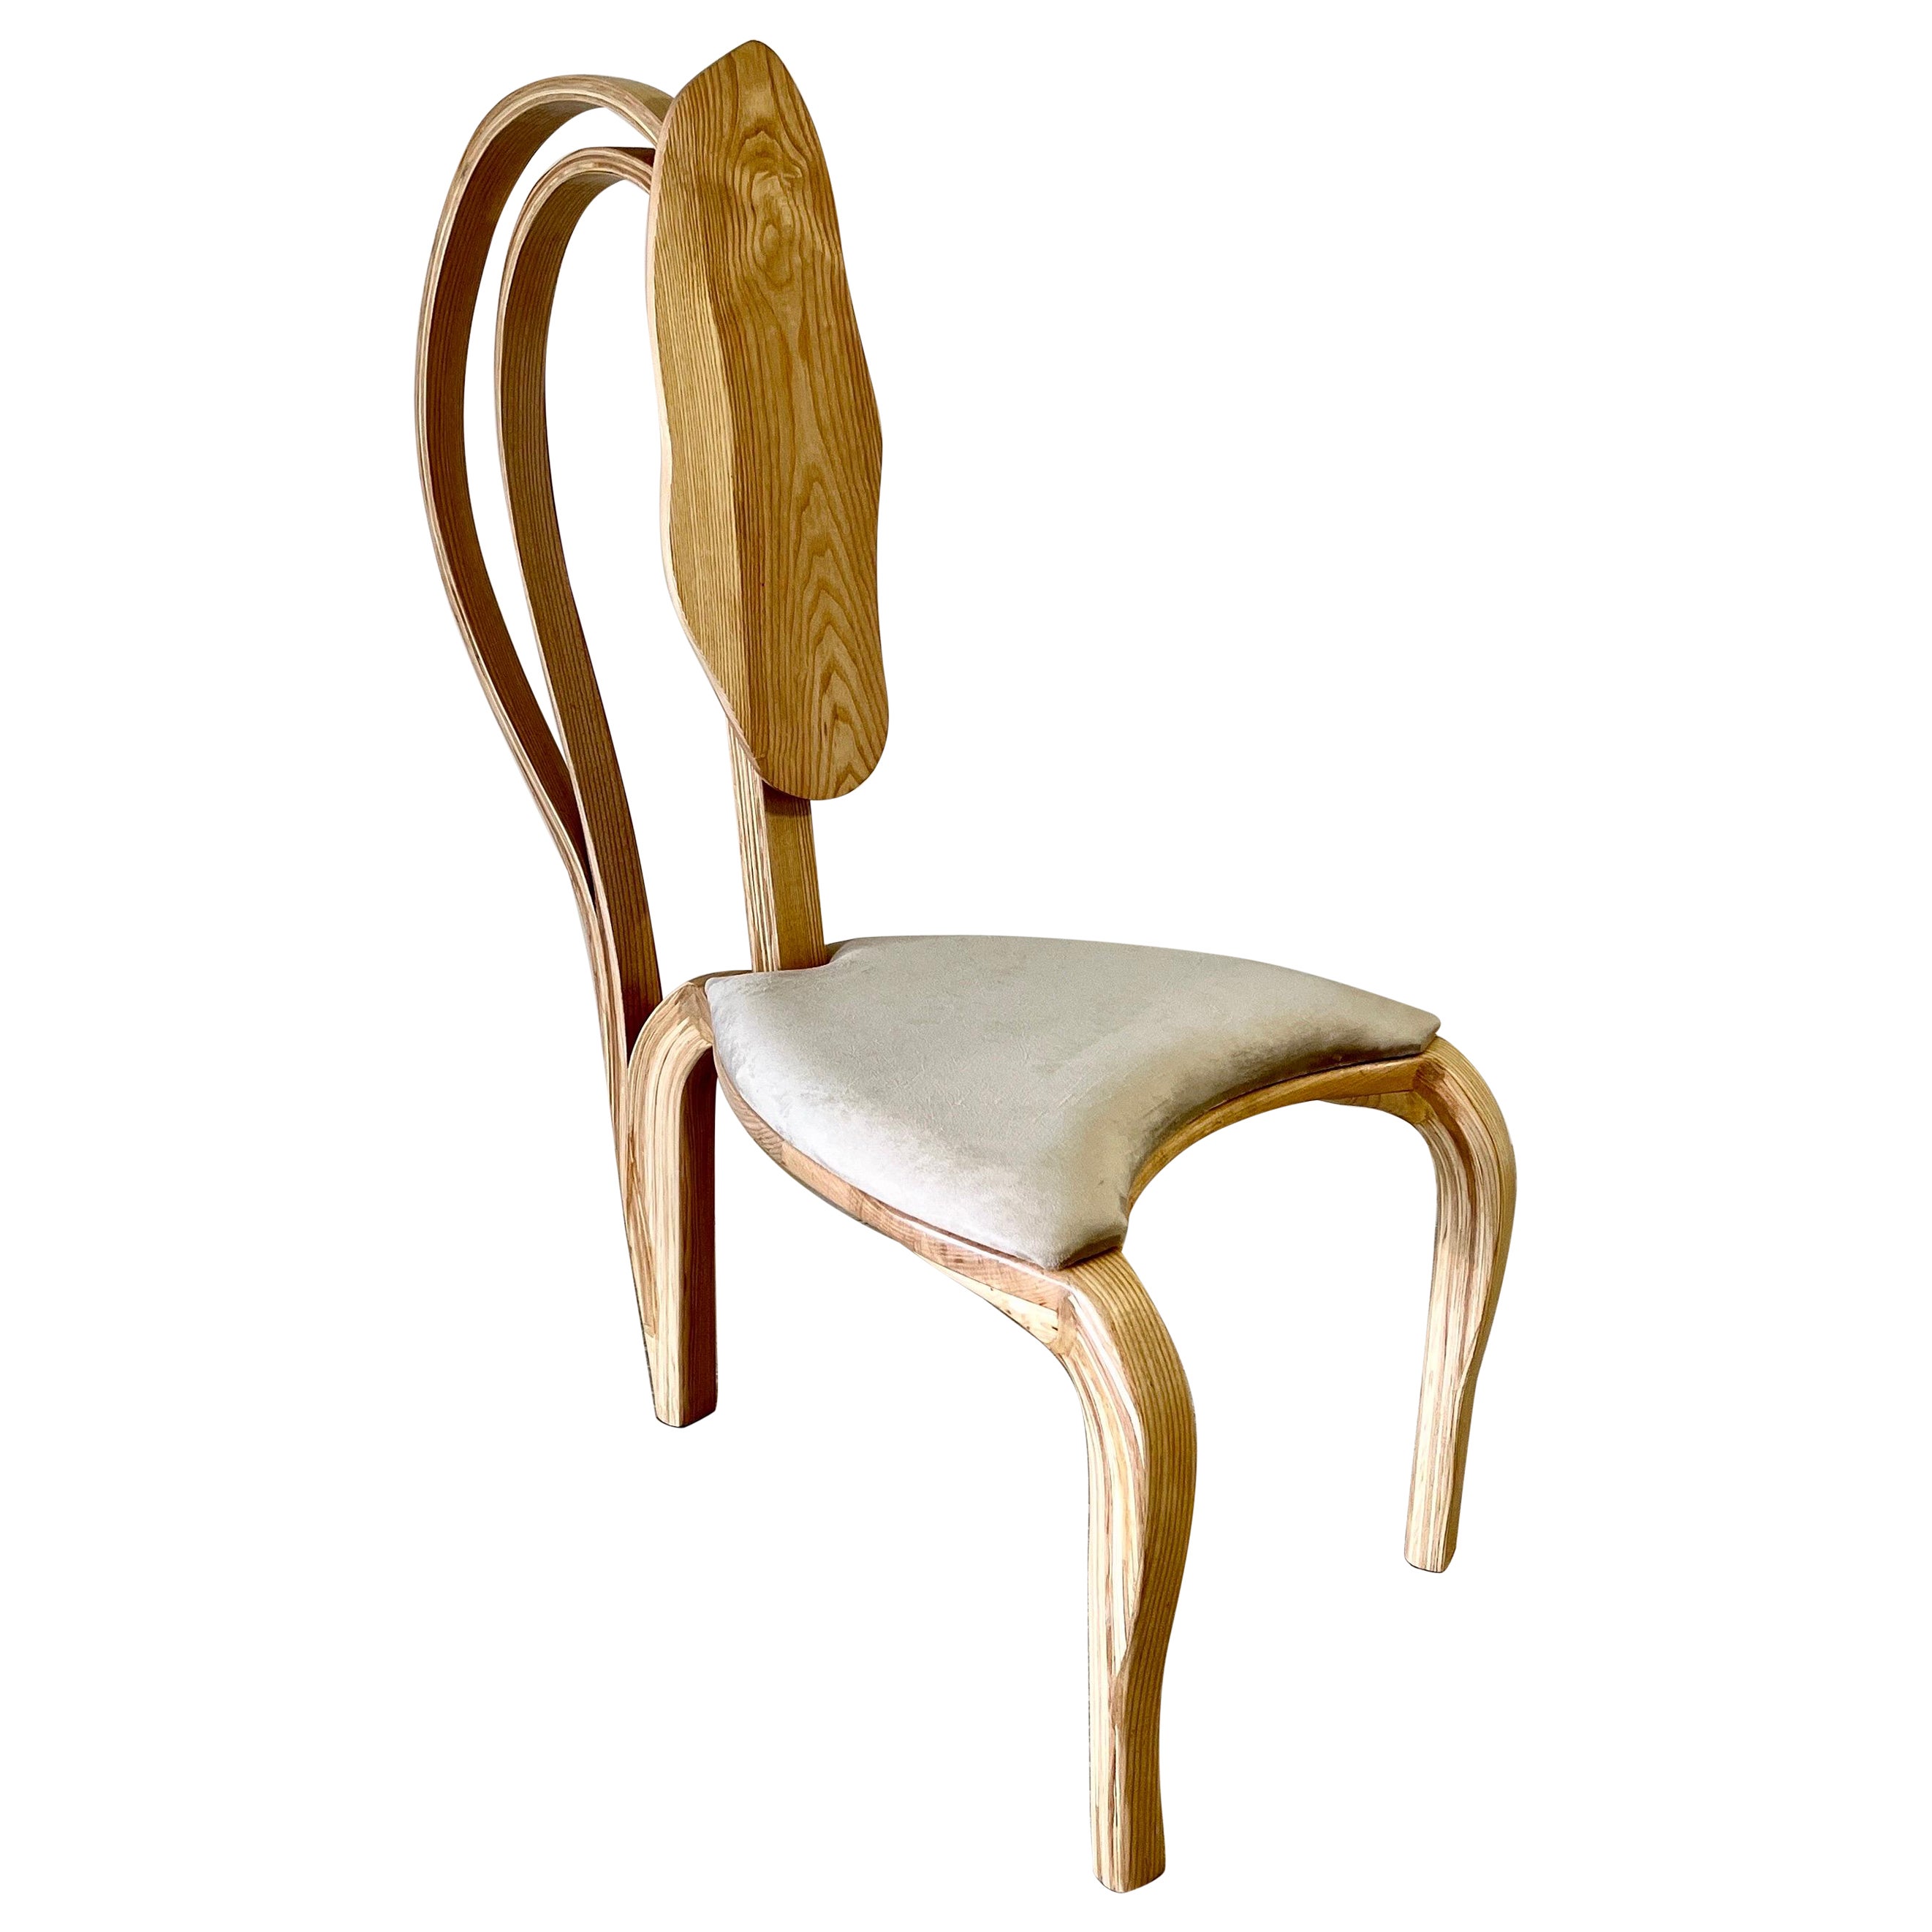 Dining Chair No. 1 - Fluentum Series, by Raka Studio